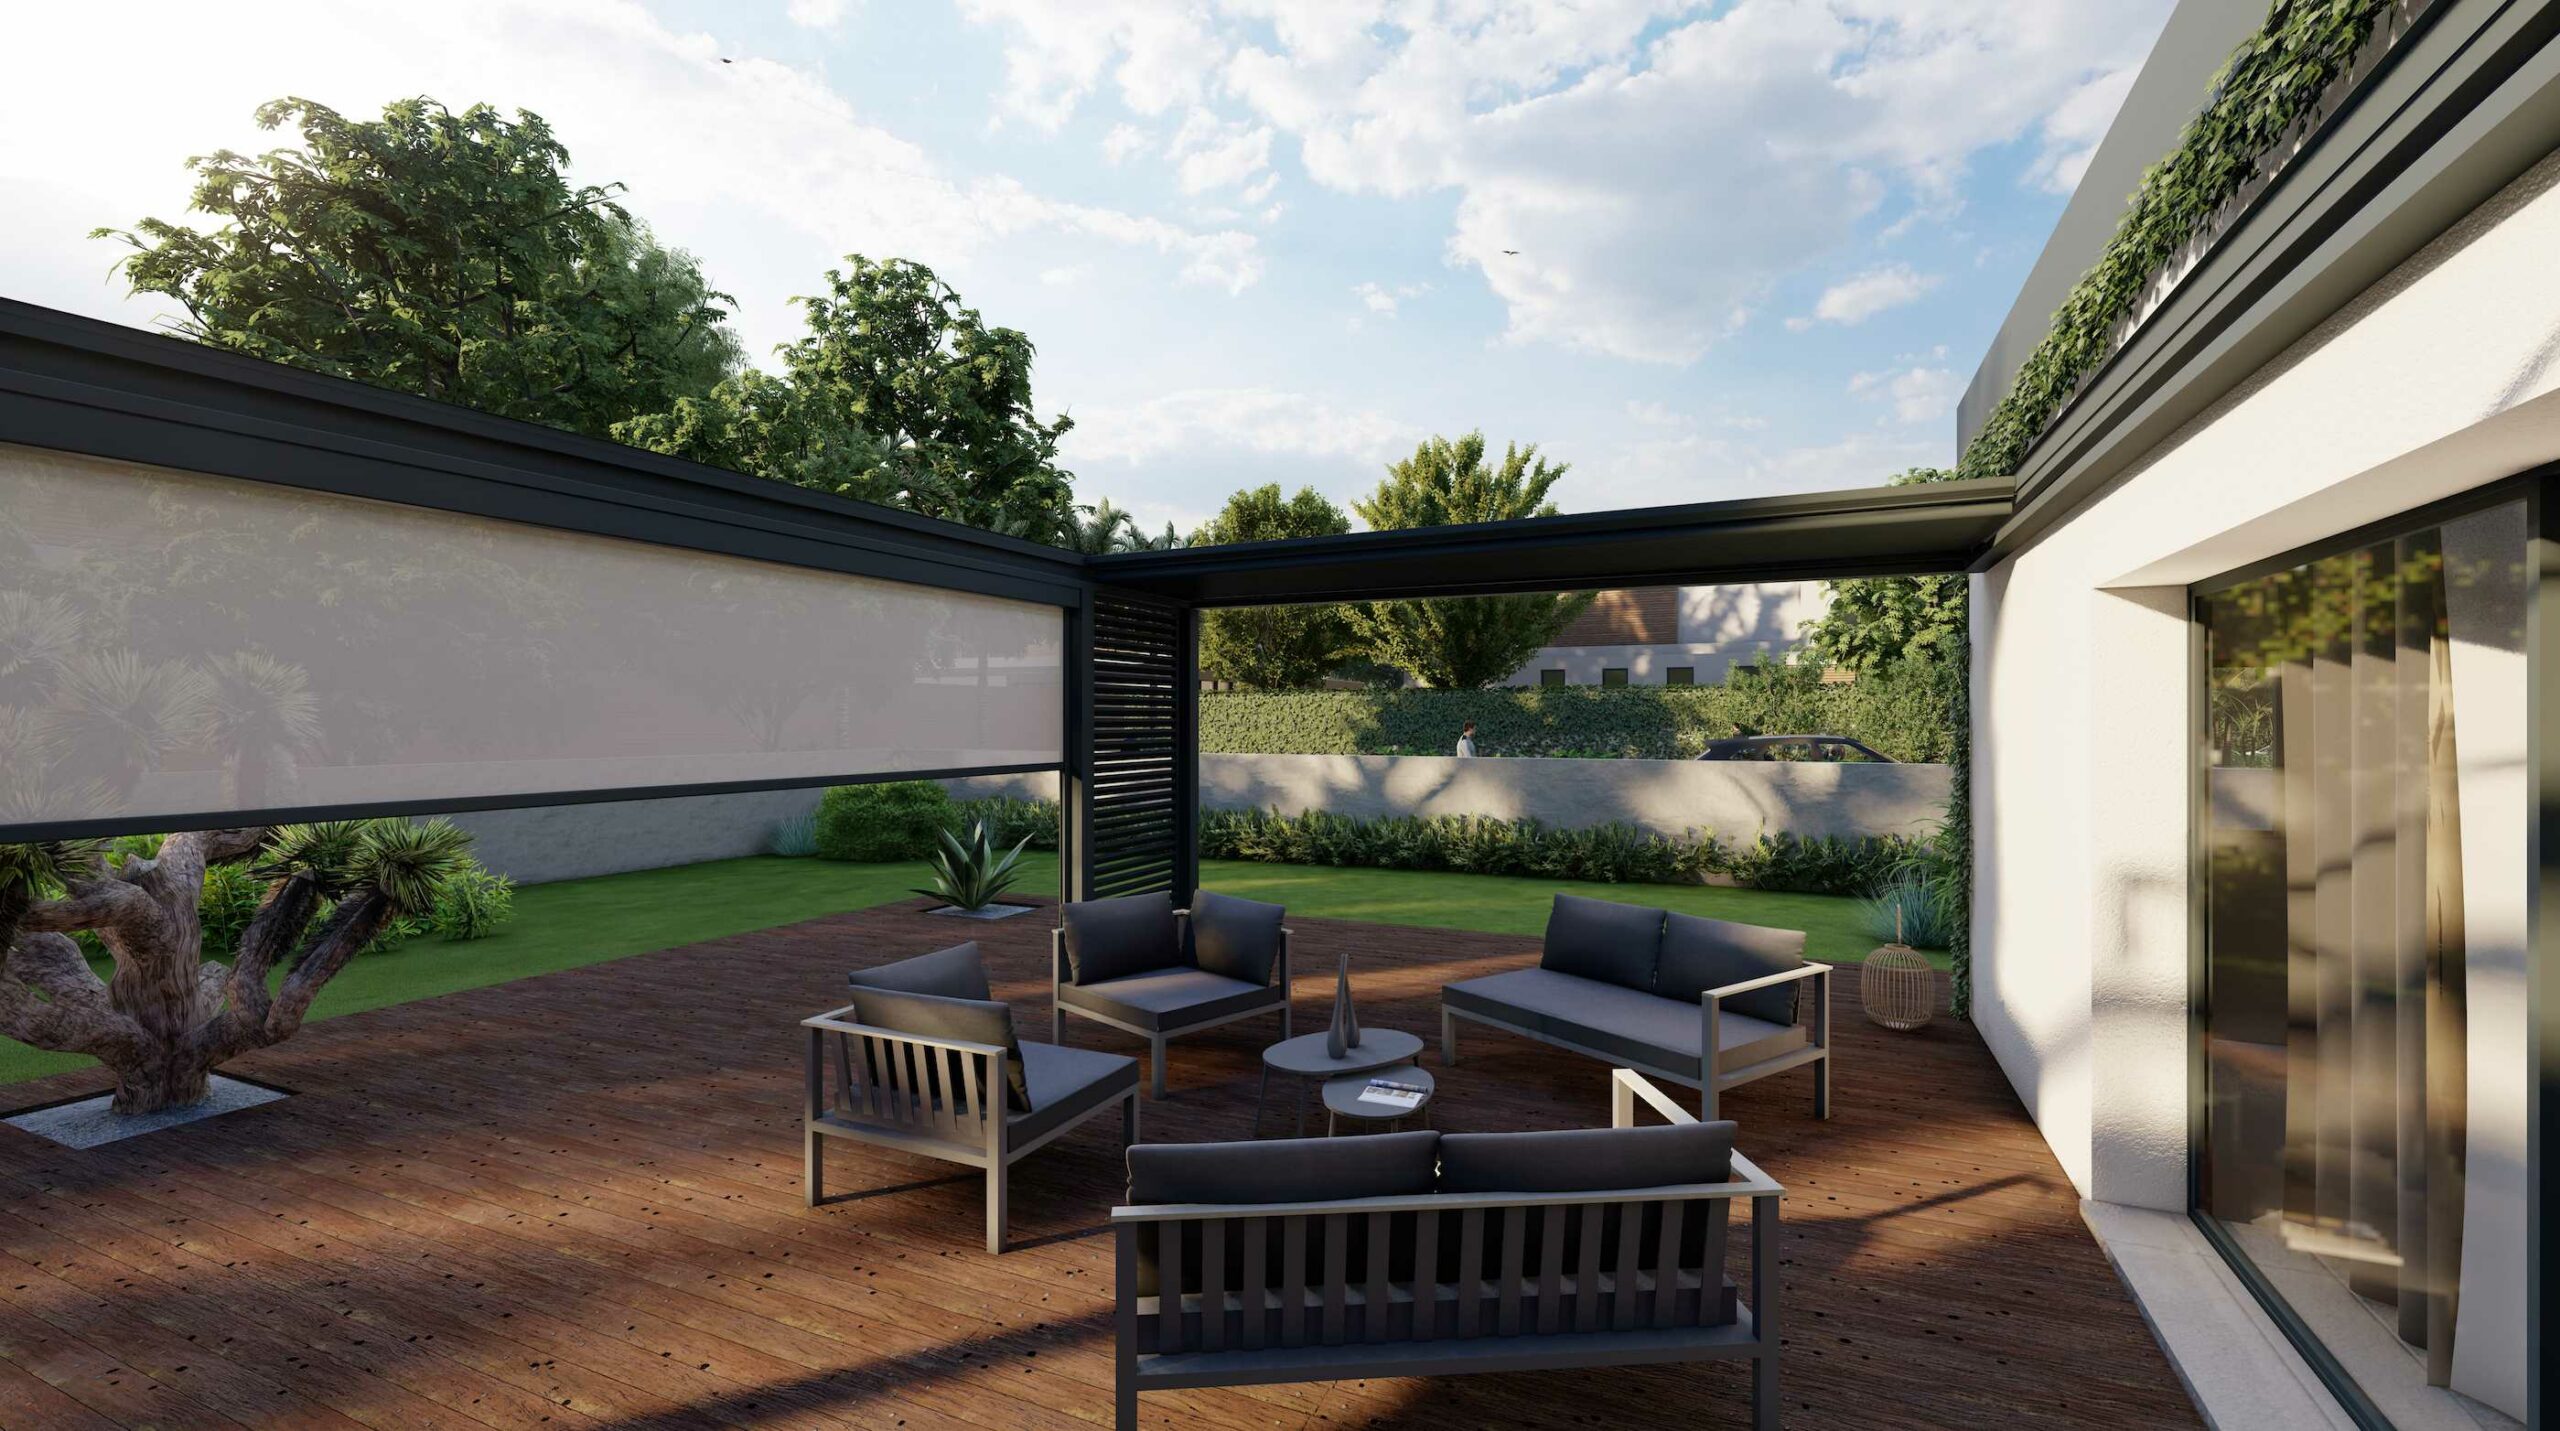 Pergola bioclimatique avec store screen et claustra aluminium de NetCoop, spécialiste en aménagement extérieur 3D.